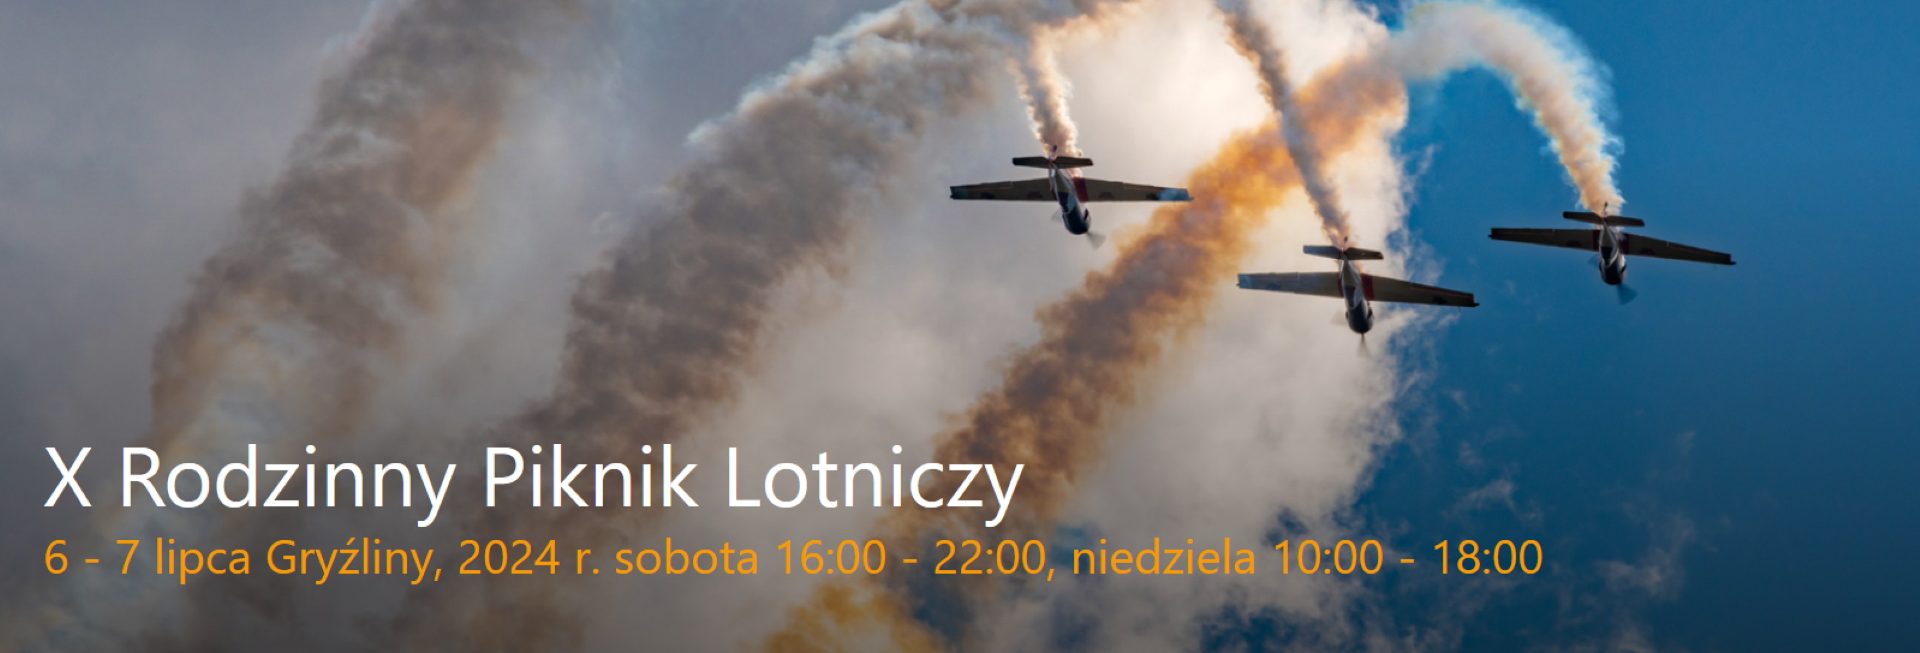 Plakat zapraszający w dniach 6-7 lipca 2024 r. do miejscowości Gryźliny w gminie Stawiguda na 10. edycję Rodzinnego Pikniku Lotniczego Gryźliny 2024.